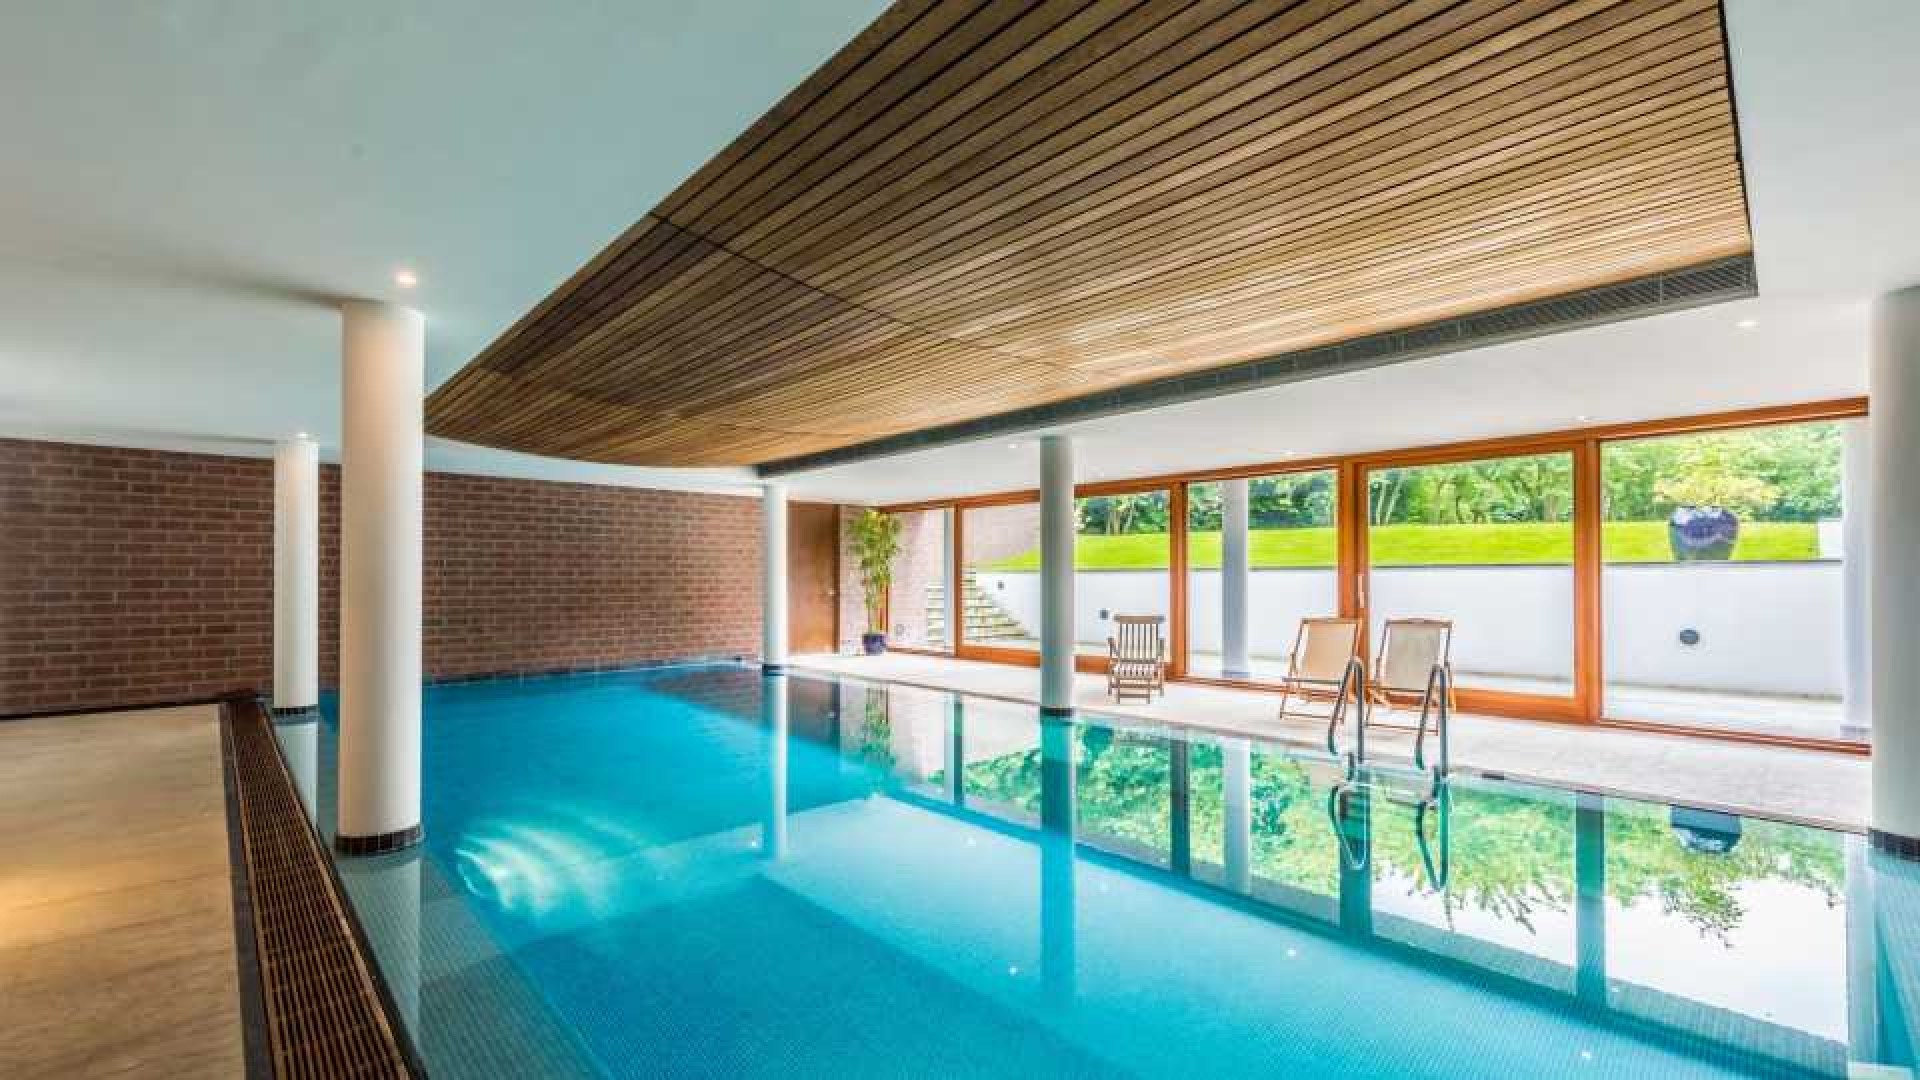 Cool Cat oprichter Roland Kahn zet zijn miljoenen villa met inpandig zwembad te koop. Zie foto's 14